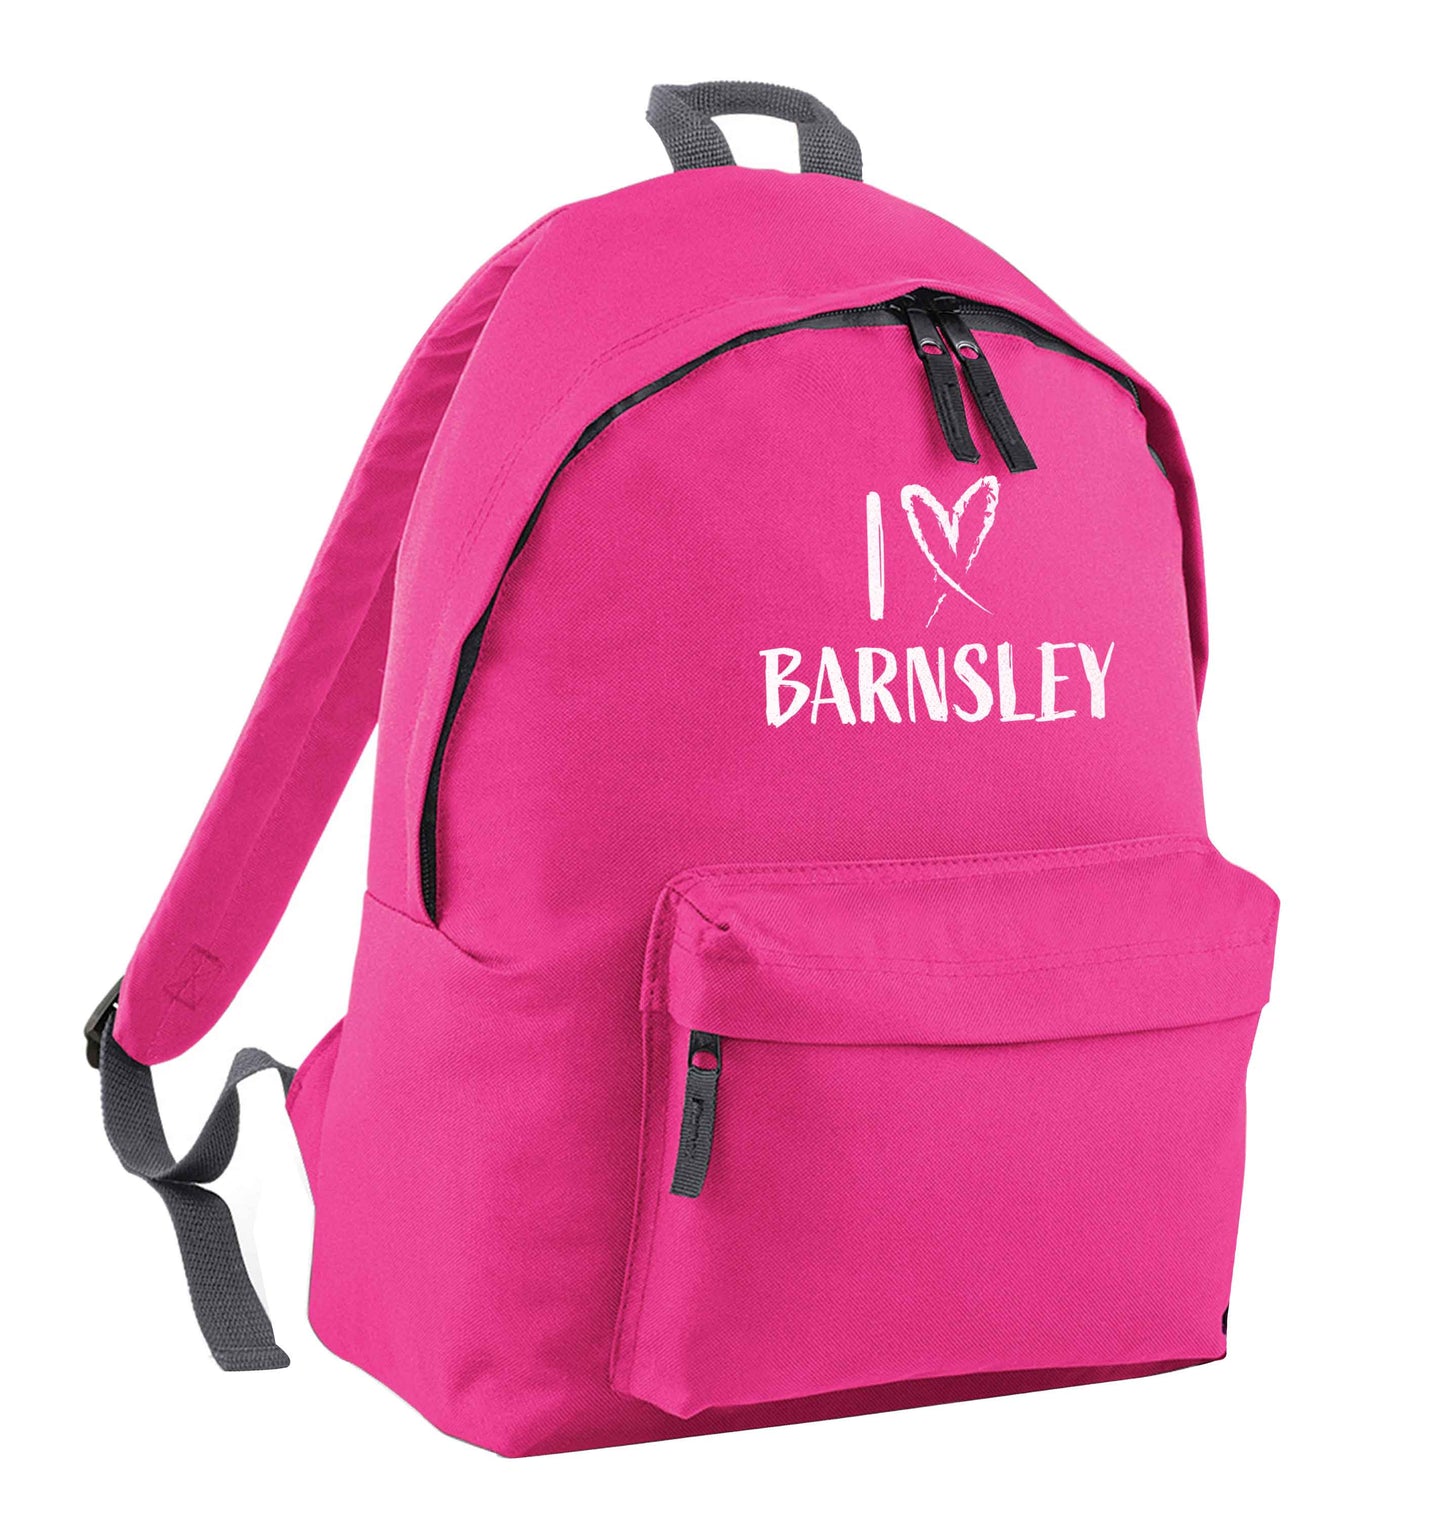 I love Barnsley pink adults backpack